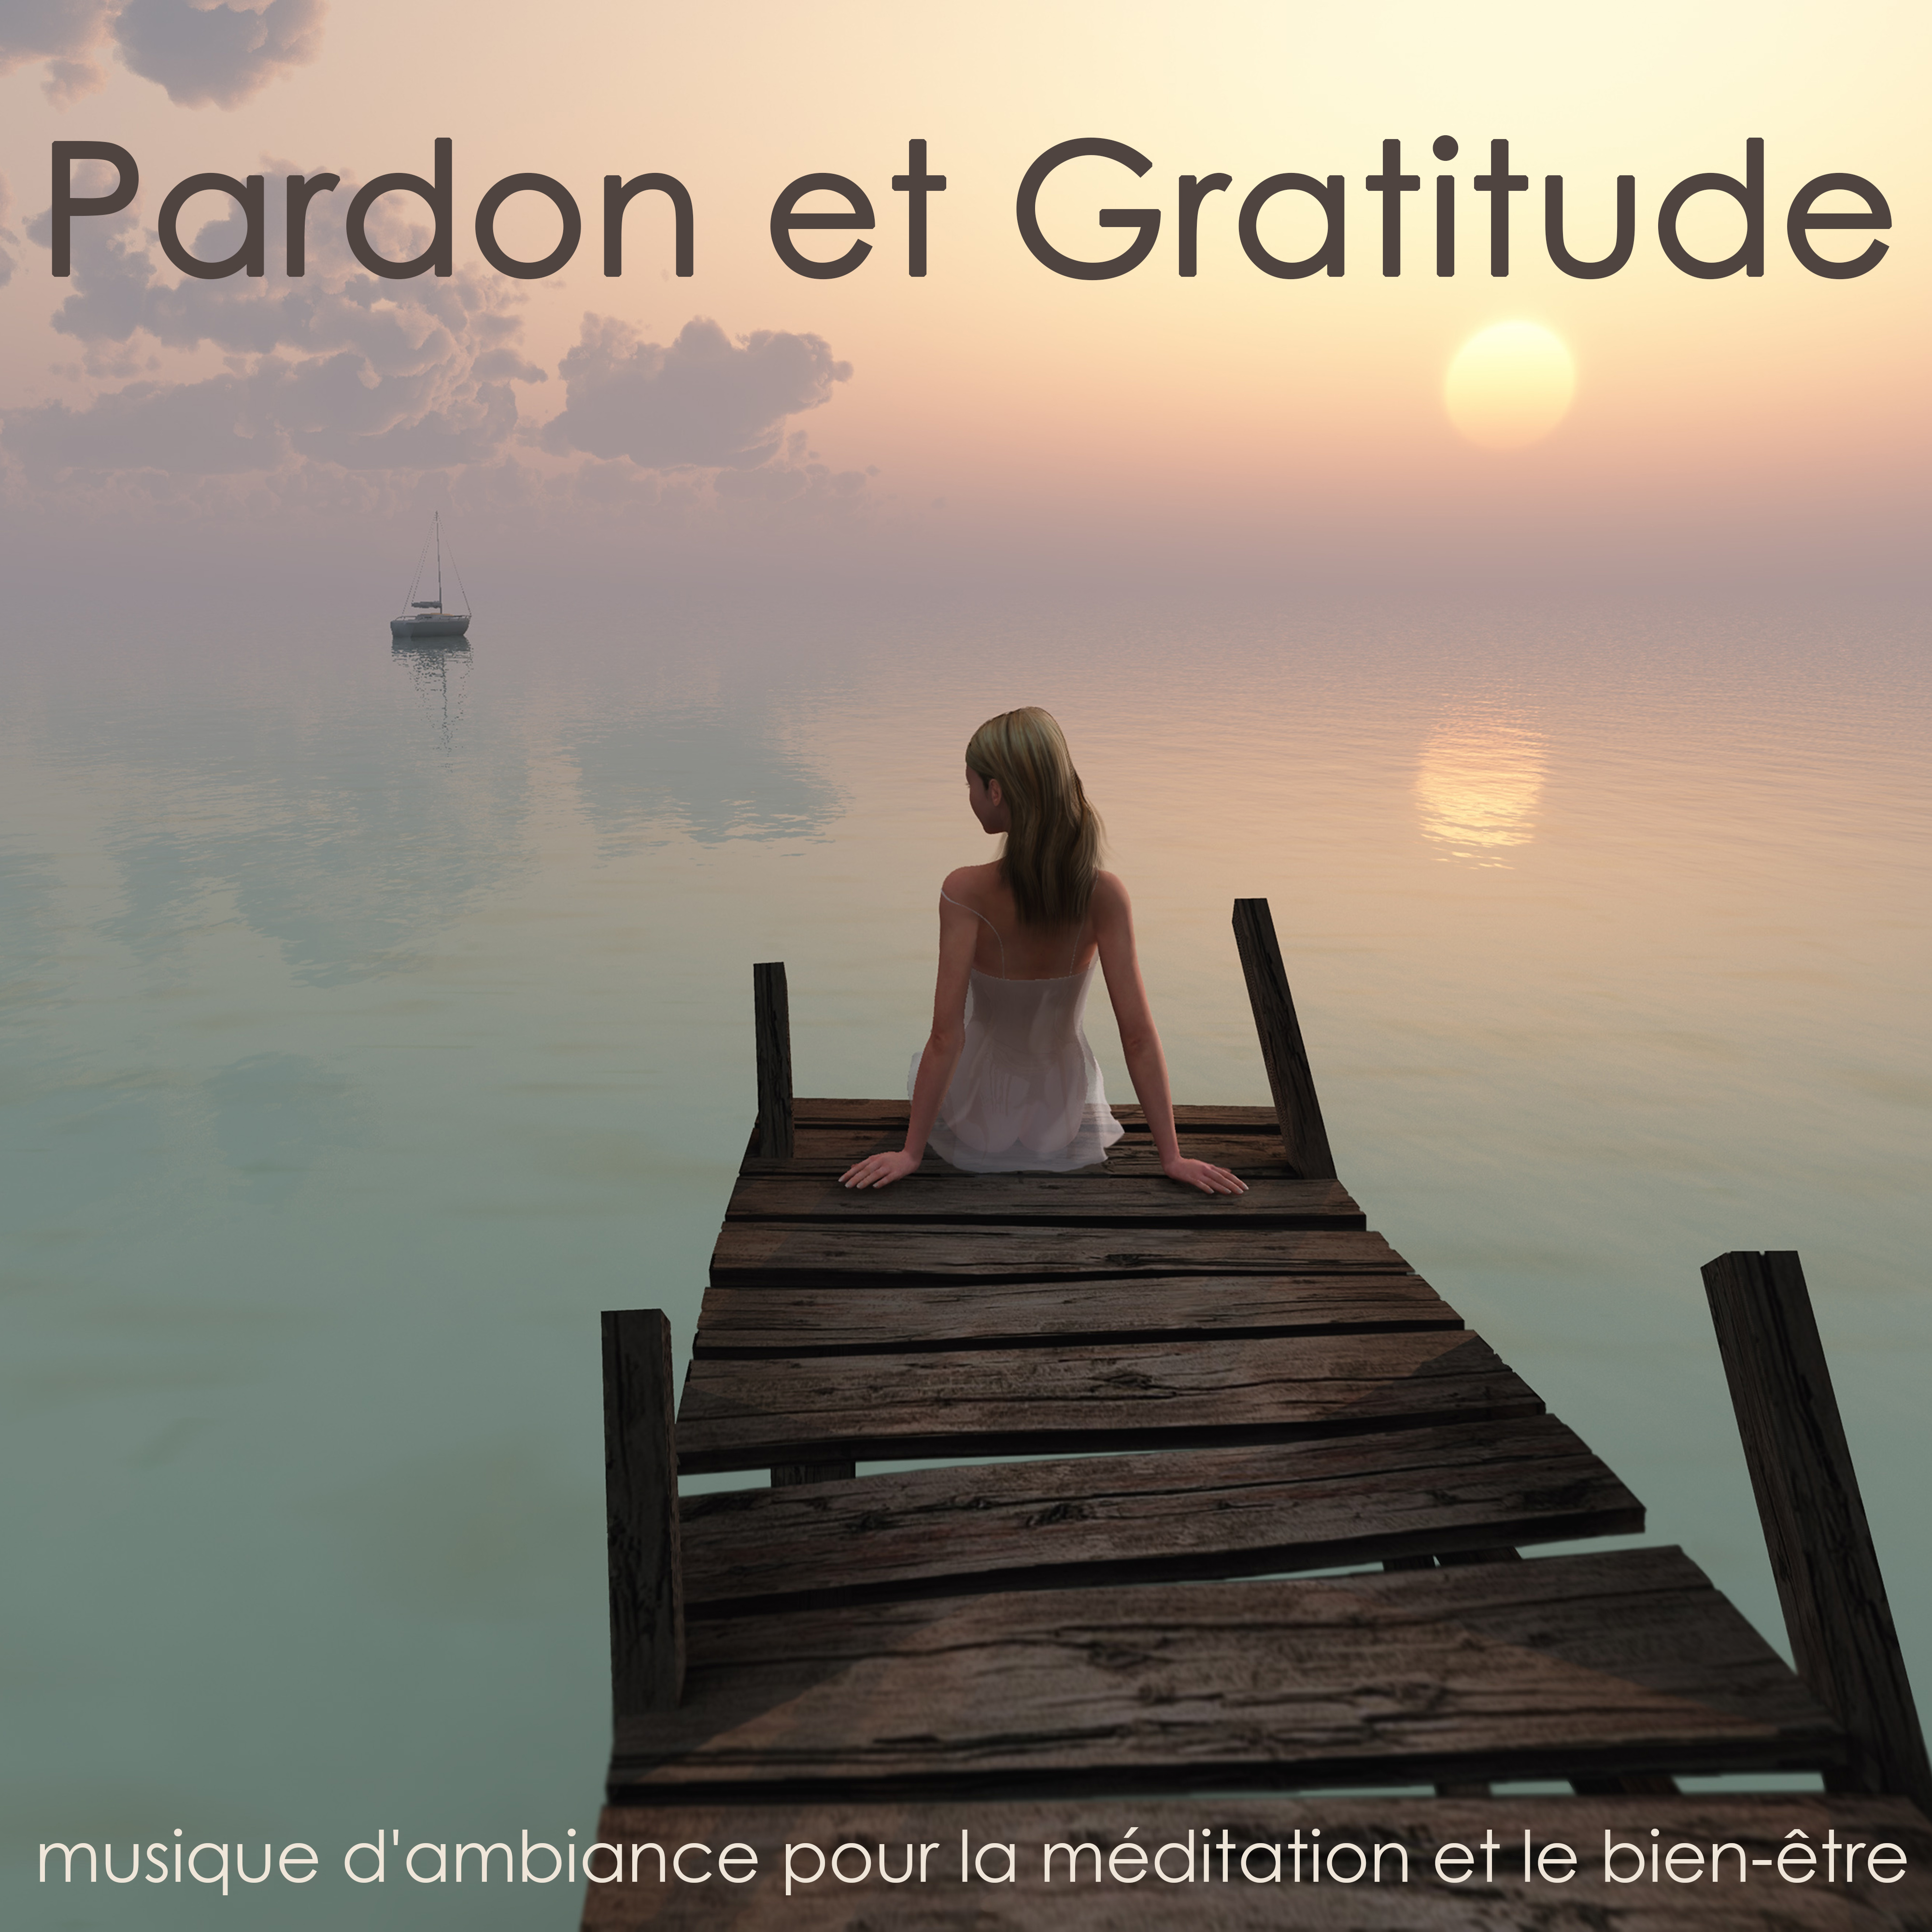 Pardon et Gratitude – Musique d'ambiance pour la méditation et le bien-être, ouvrir son coeur et pardonner